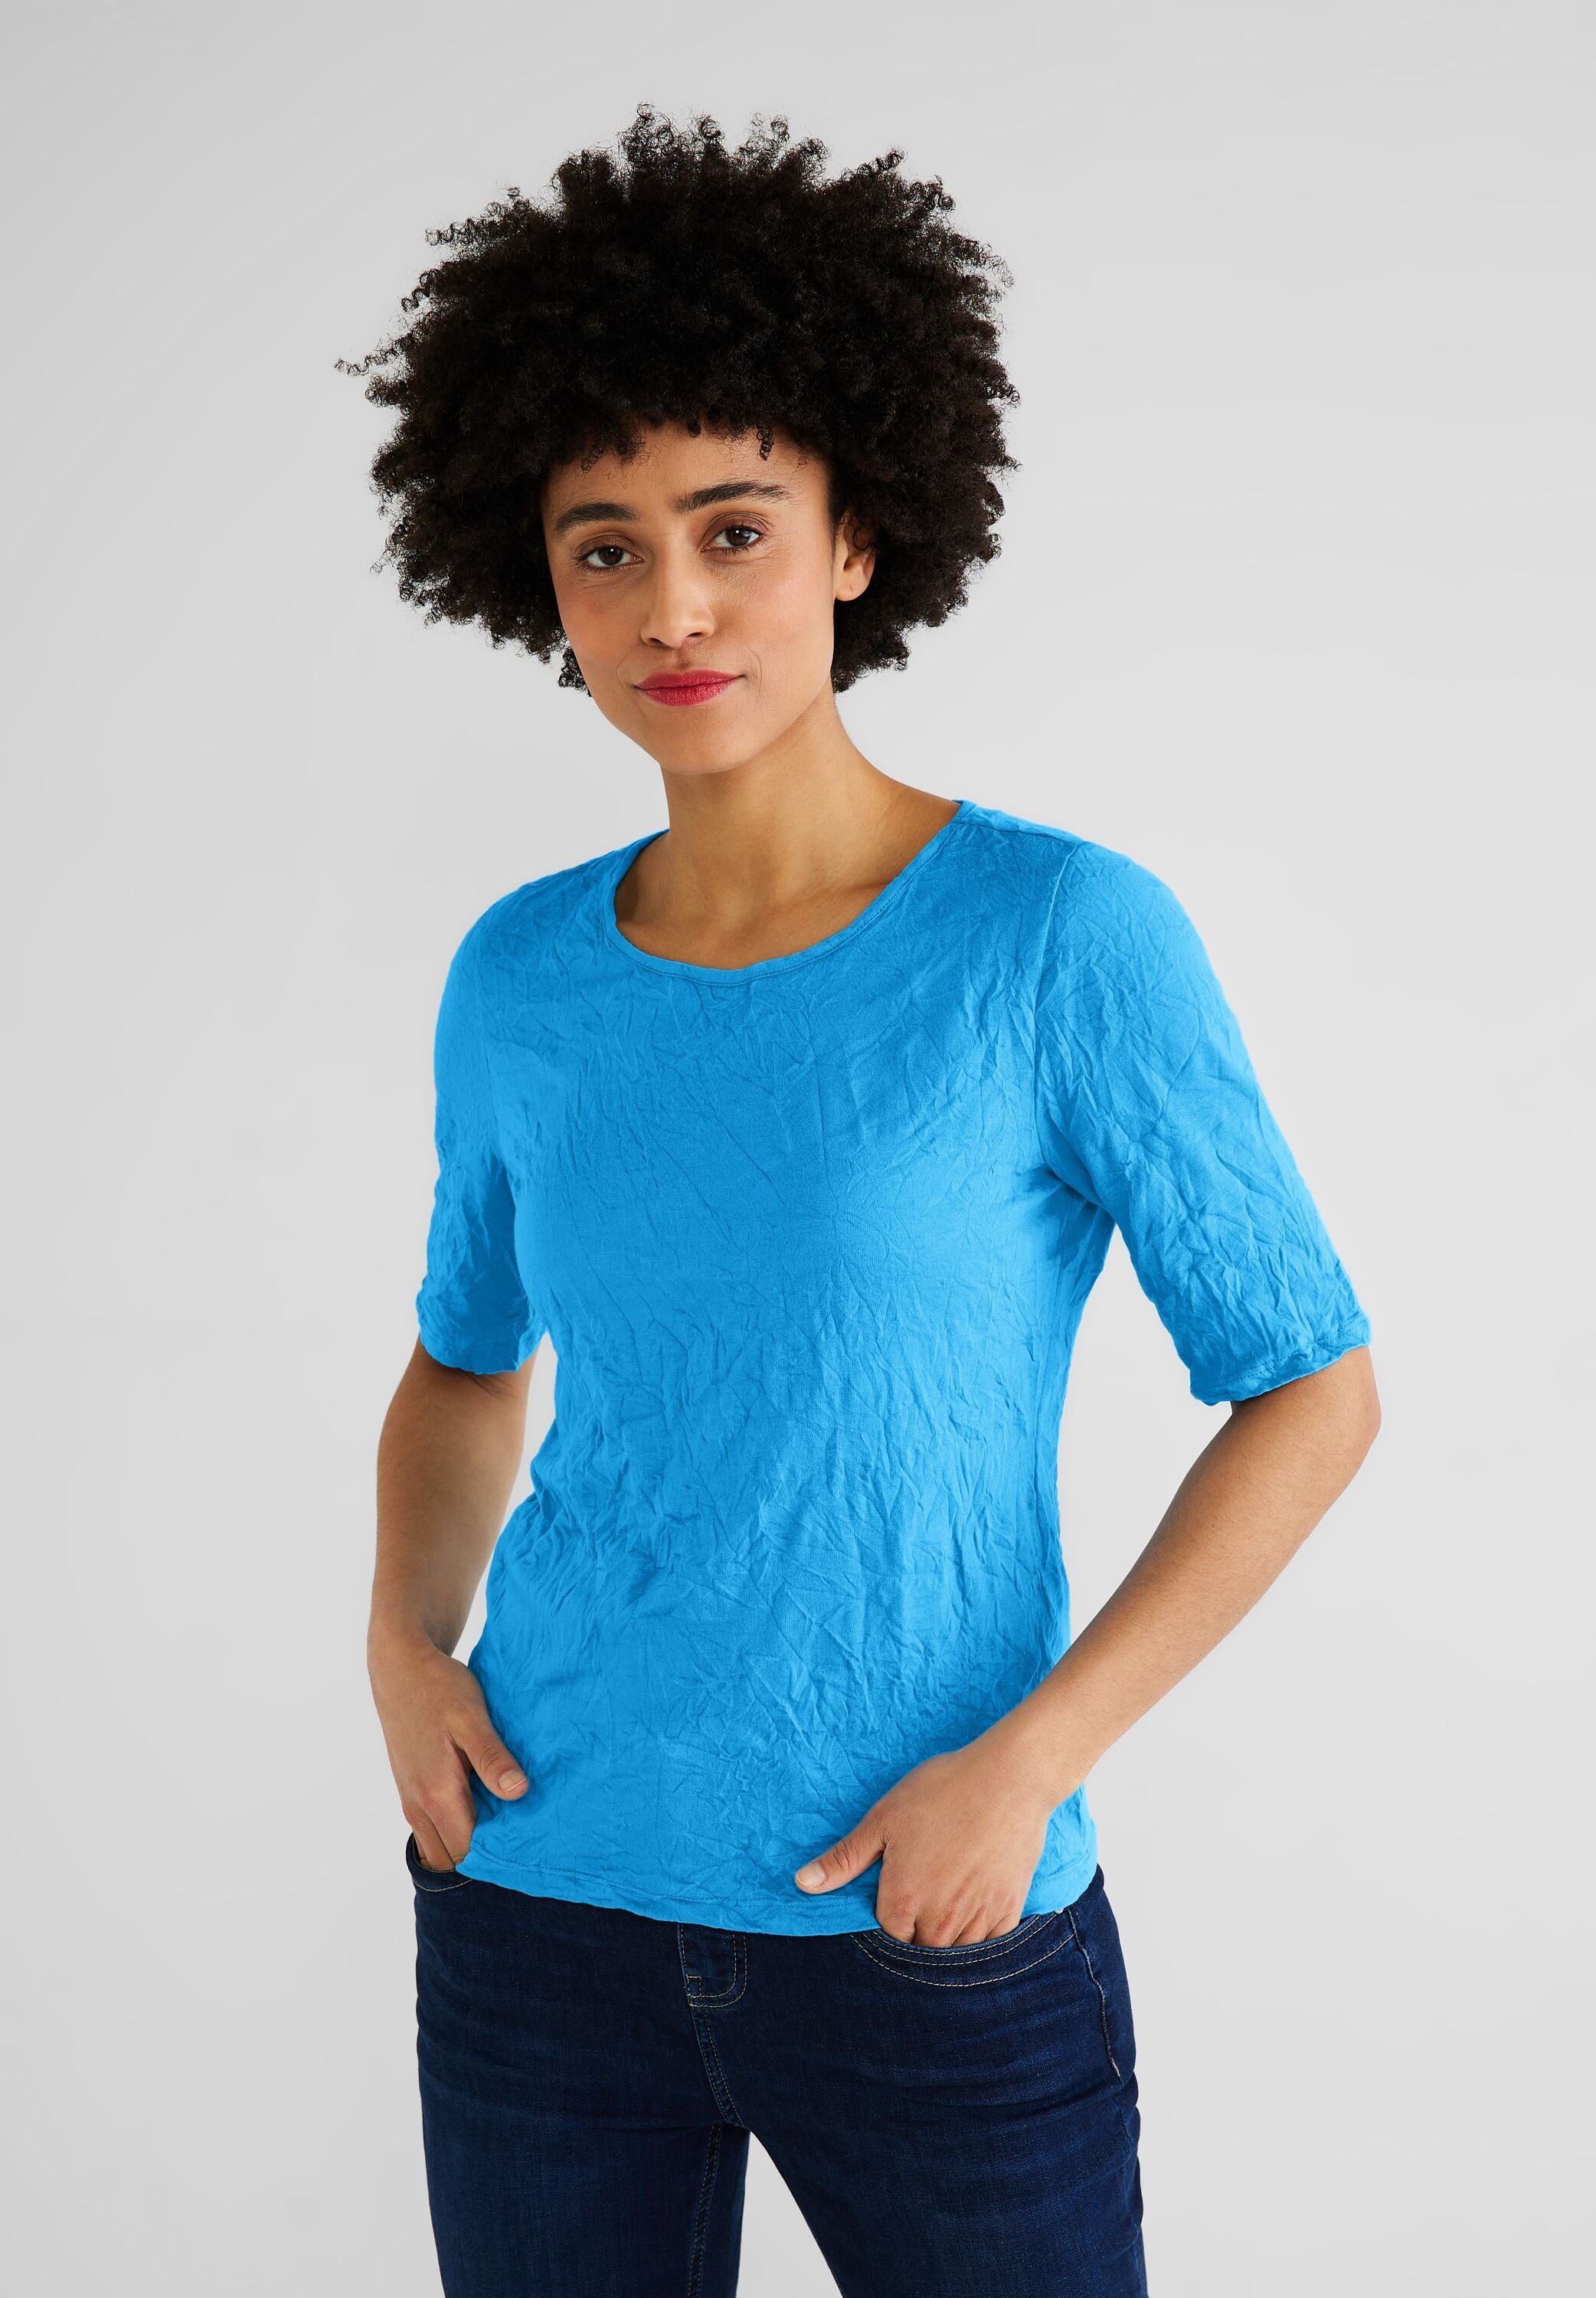 ONE aus splash softem blue Rundhalsshirt STREET Materialmix